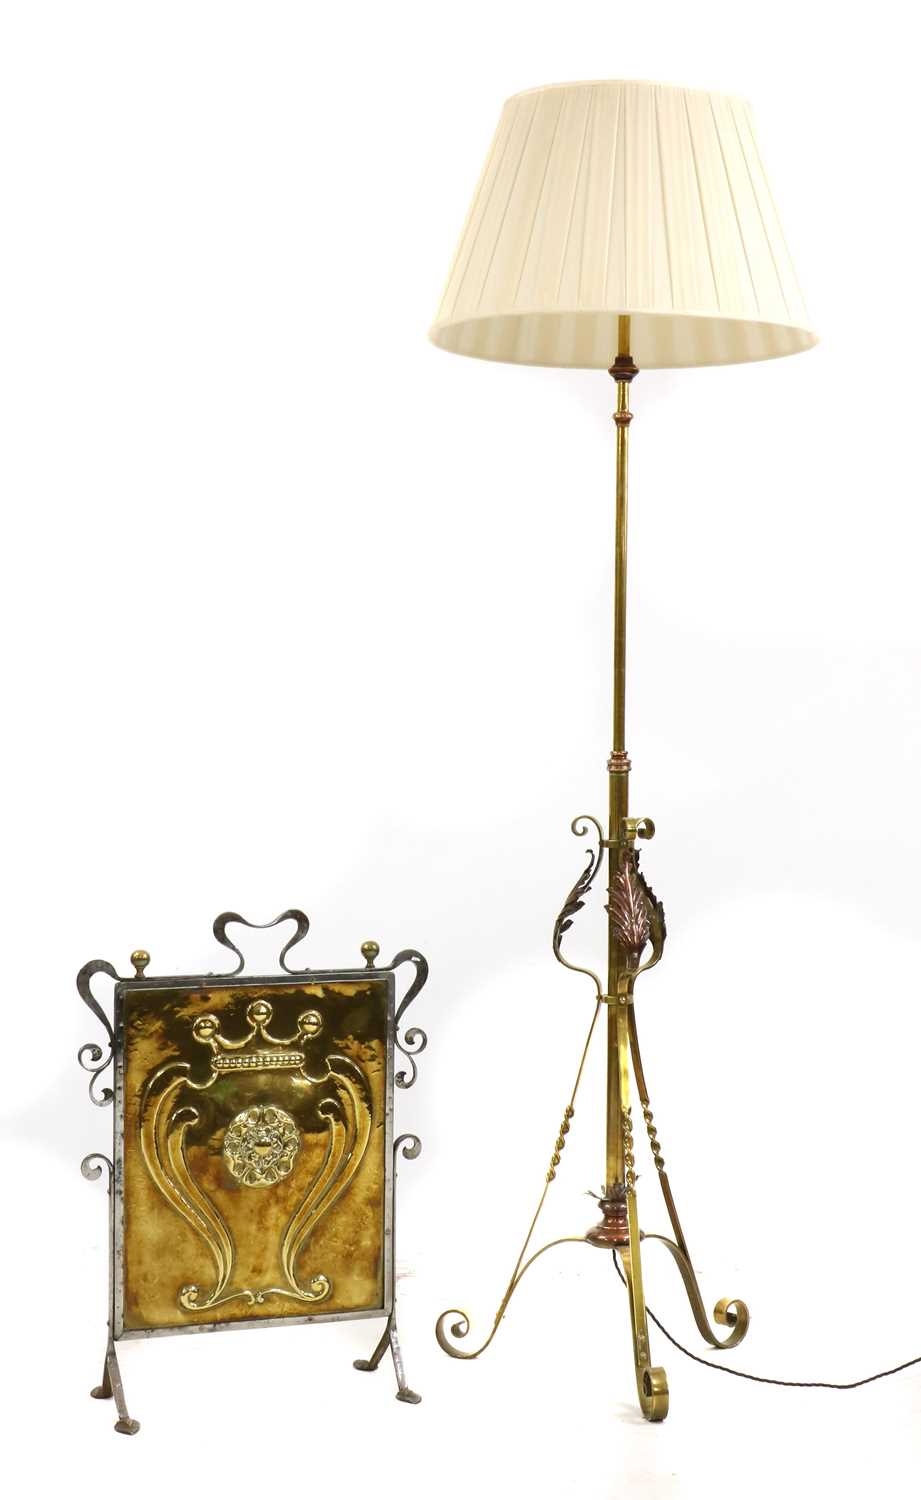 Lot 73 - A brass standard lamp